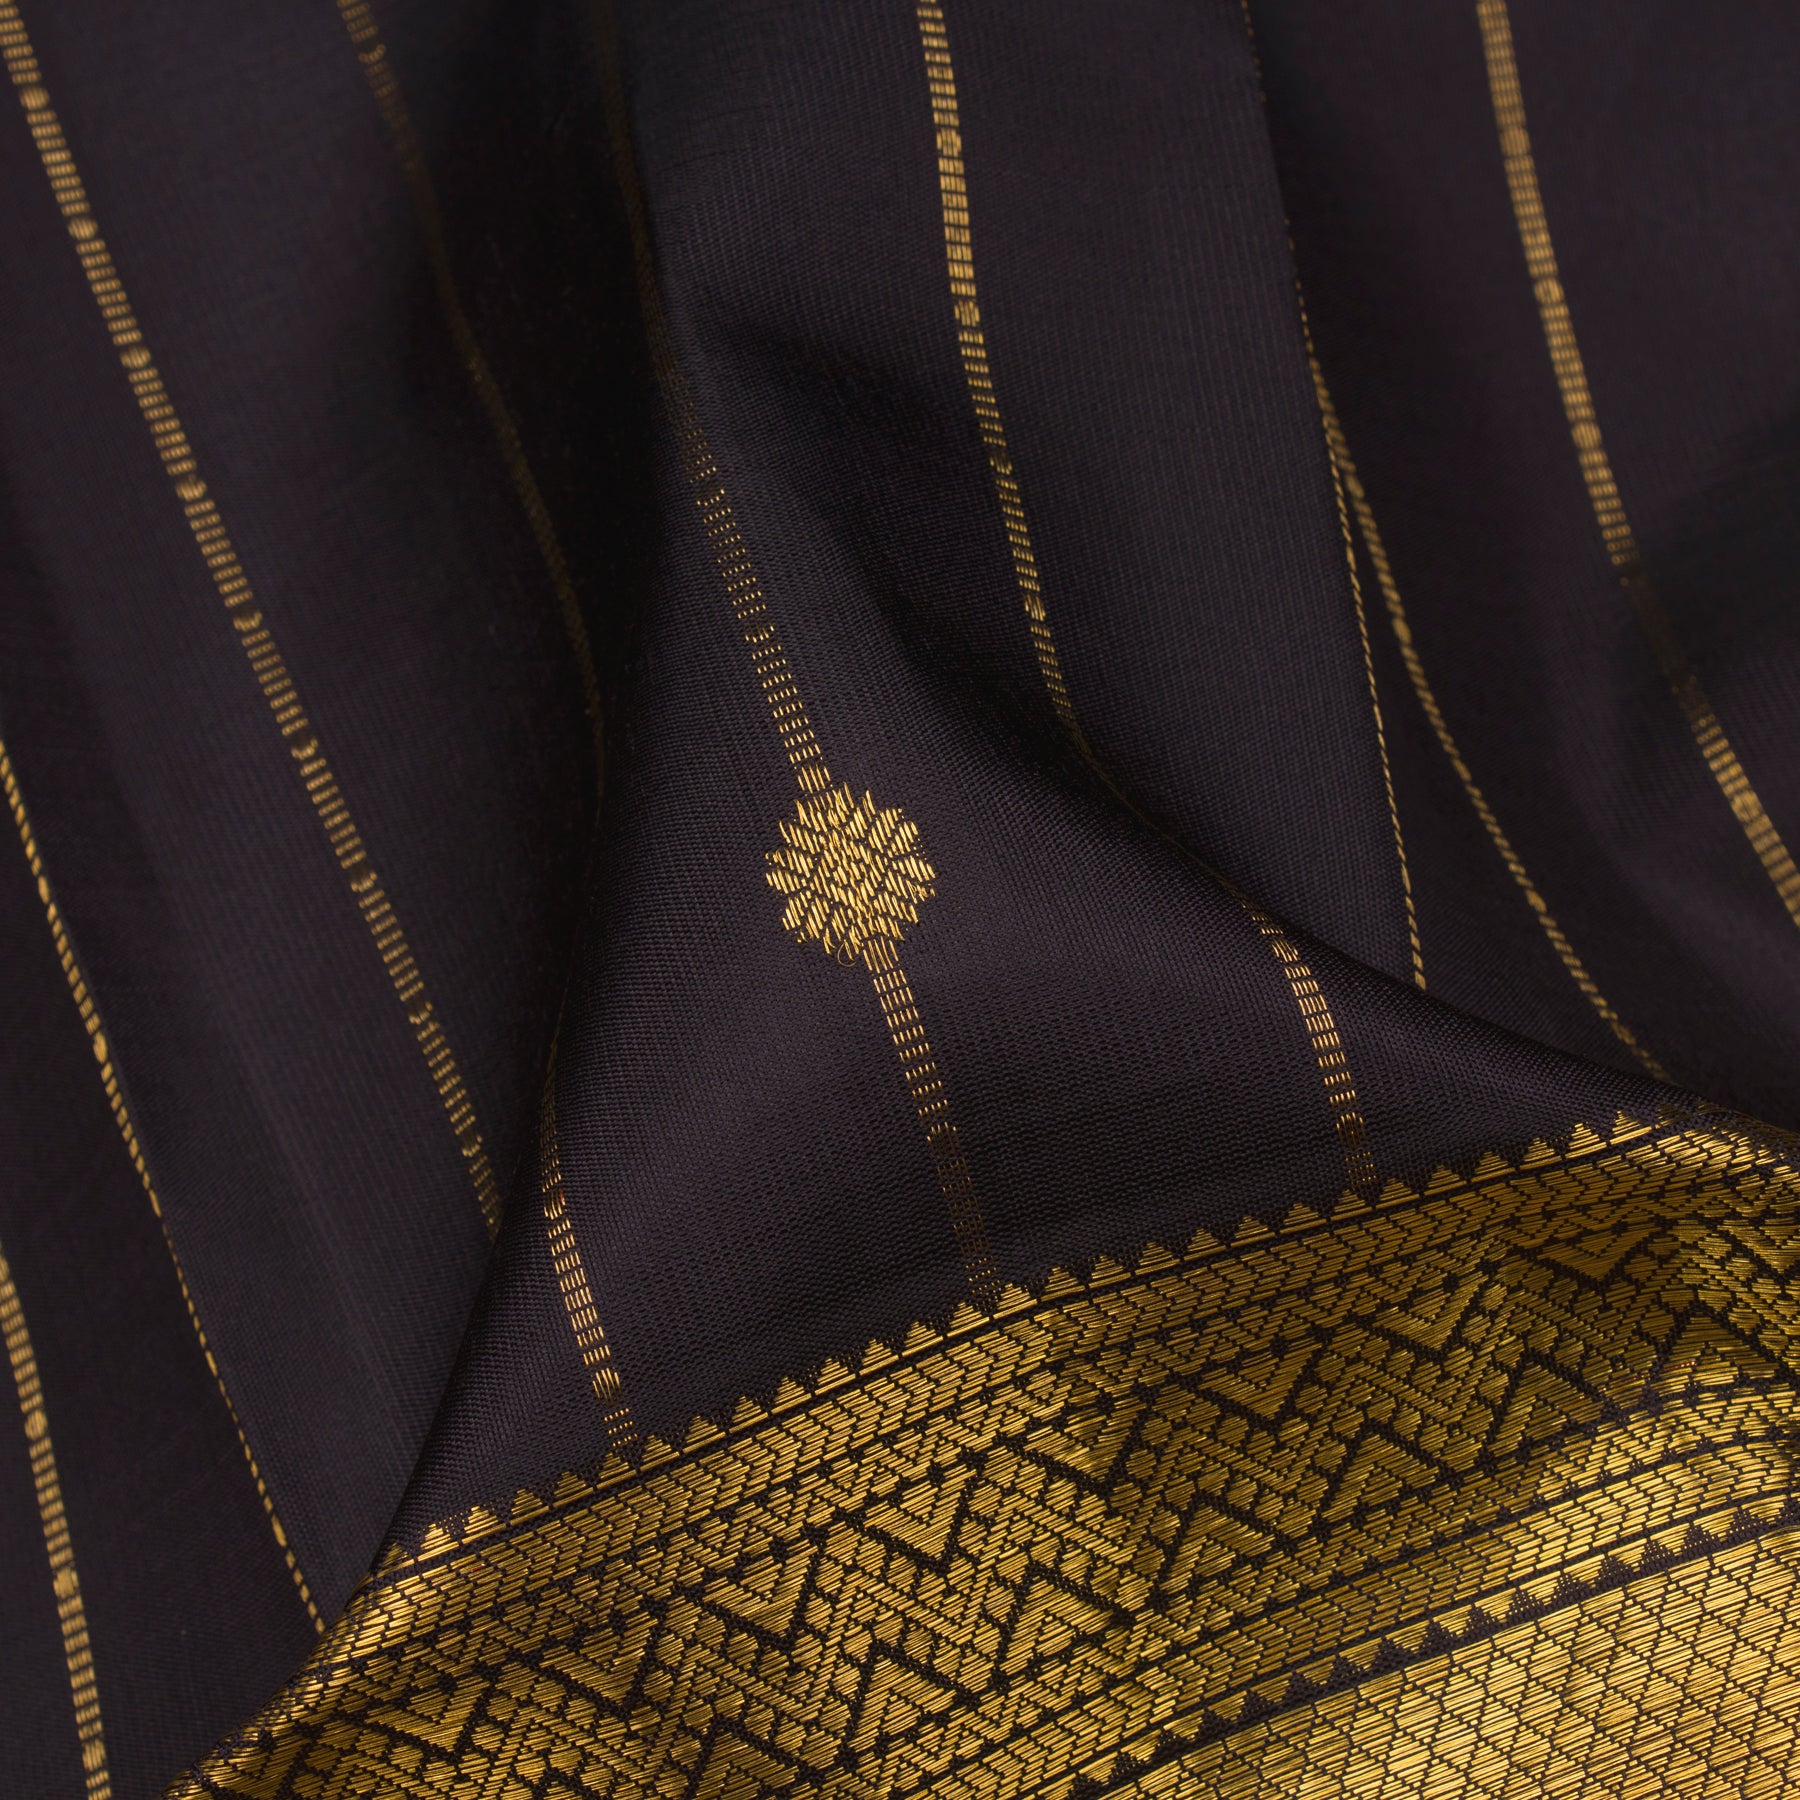 Kanakavalli Kanjivaram Silk Sari 24-599-HS001-00279 - Fabric View